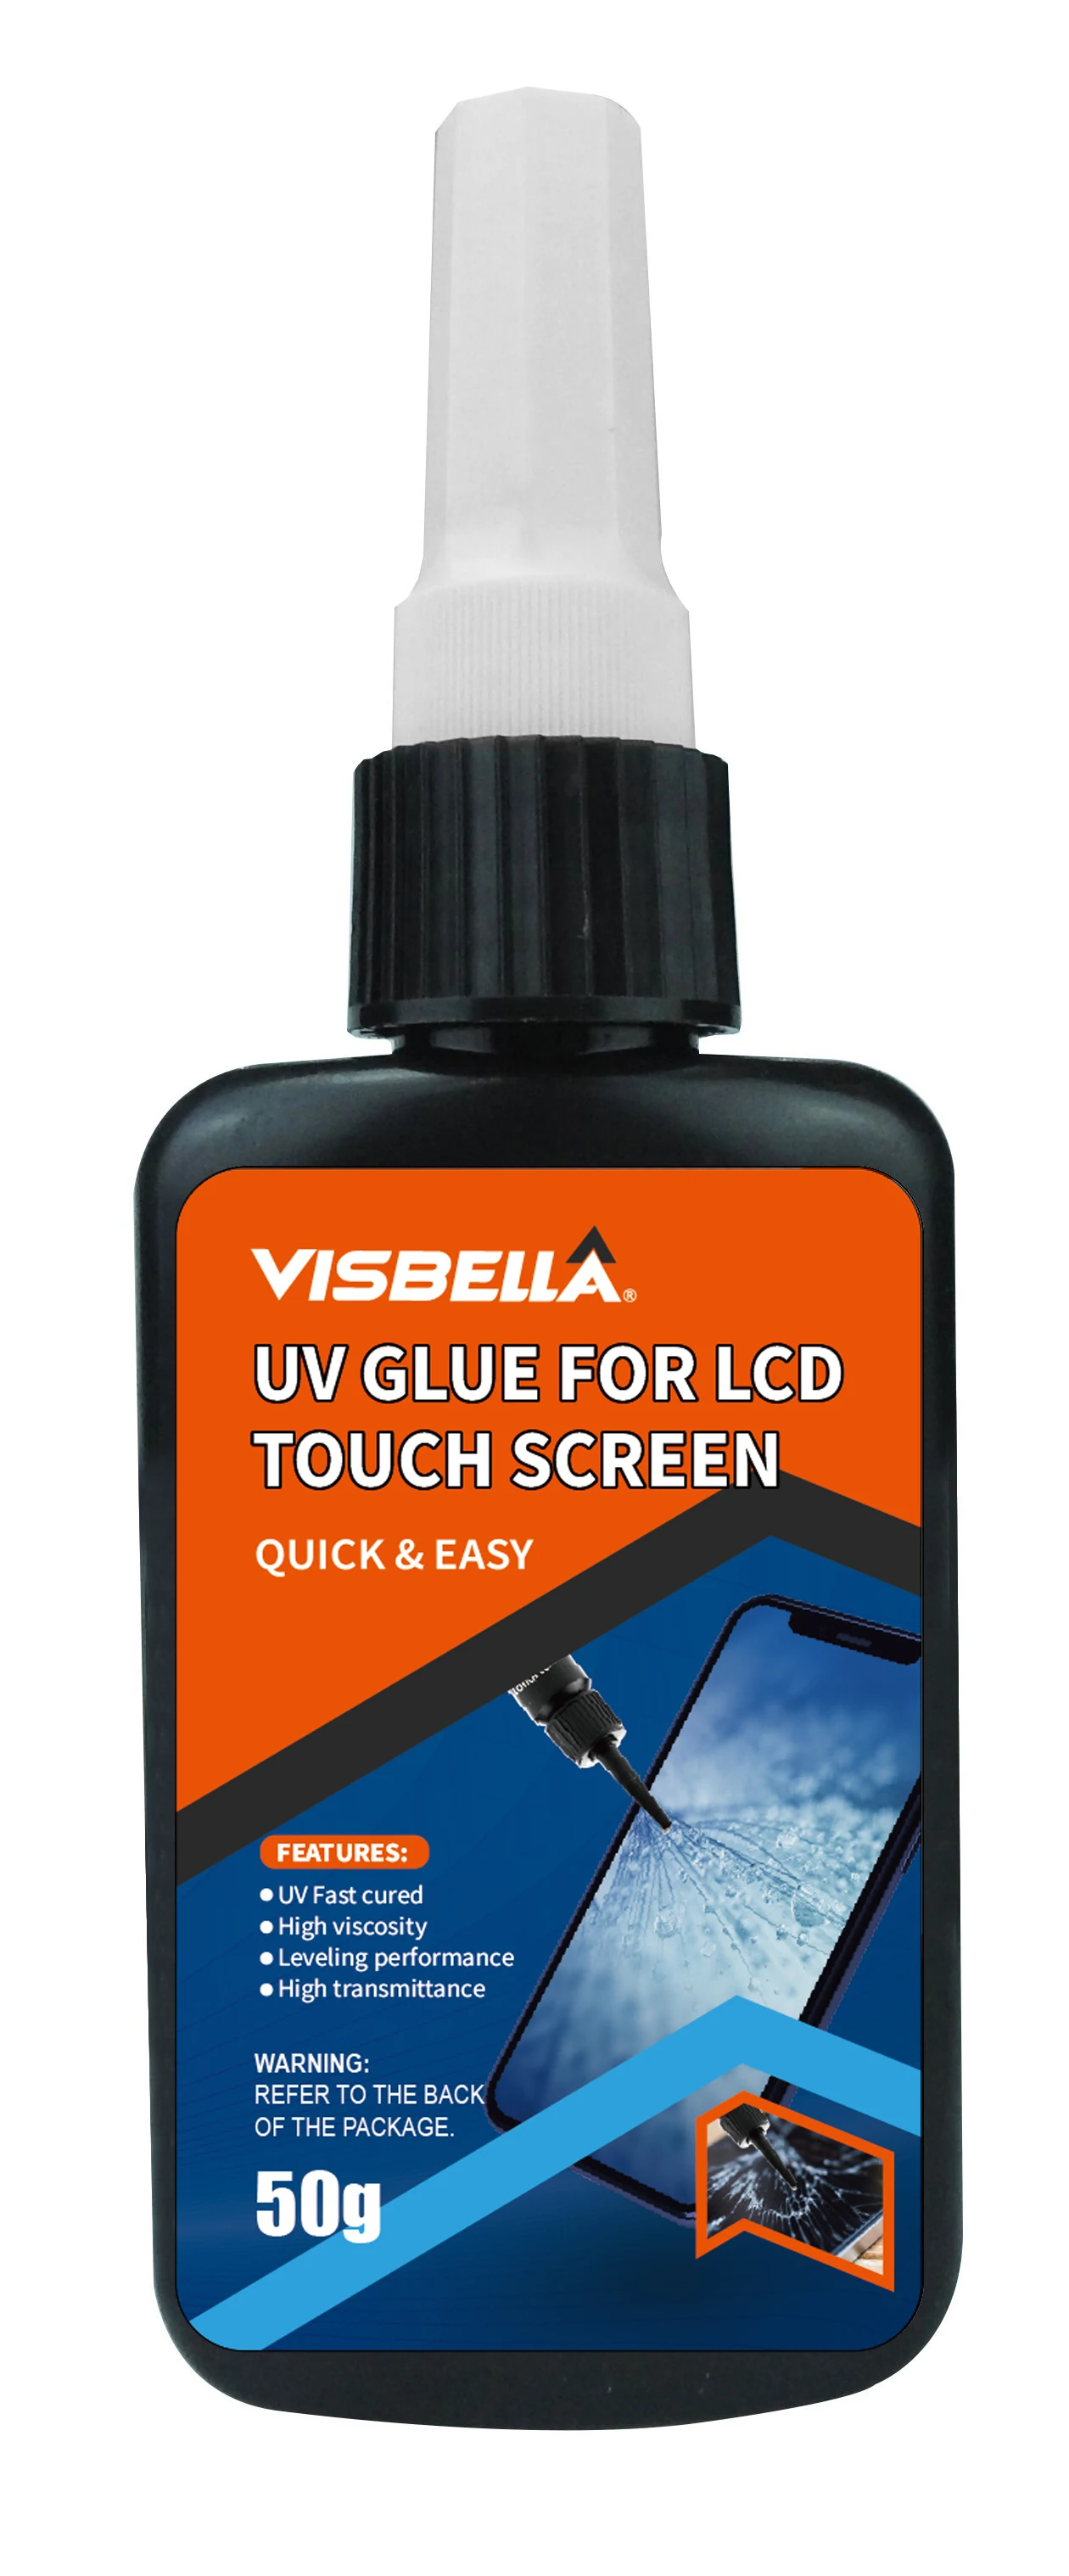 Visbella UV adhésif colle la réparation de la colle pour téléphone mobile  de l'écran tactile LCD - Chine Téléphone de la colle de réparation Scrack,  adhésif colle colle